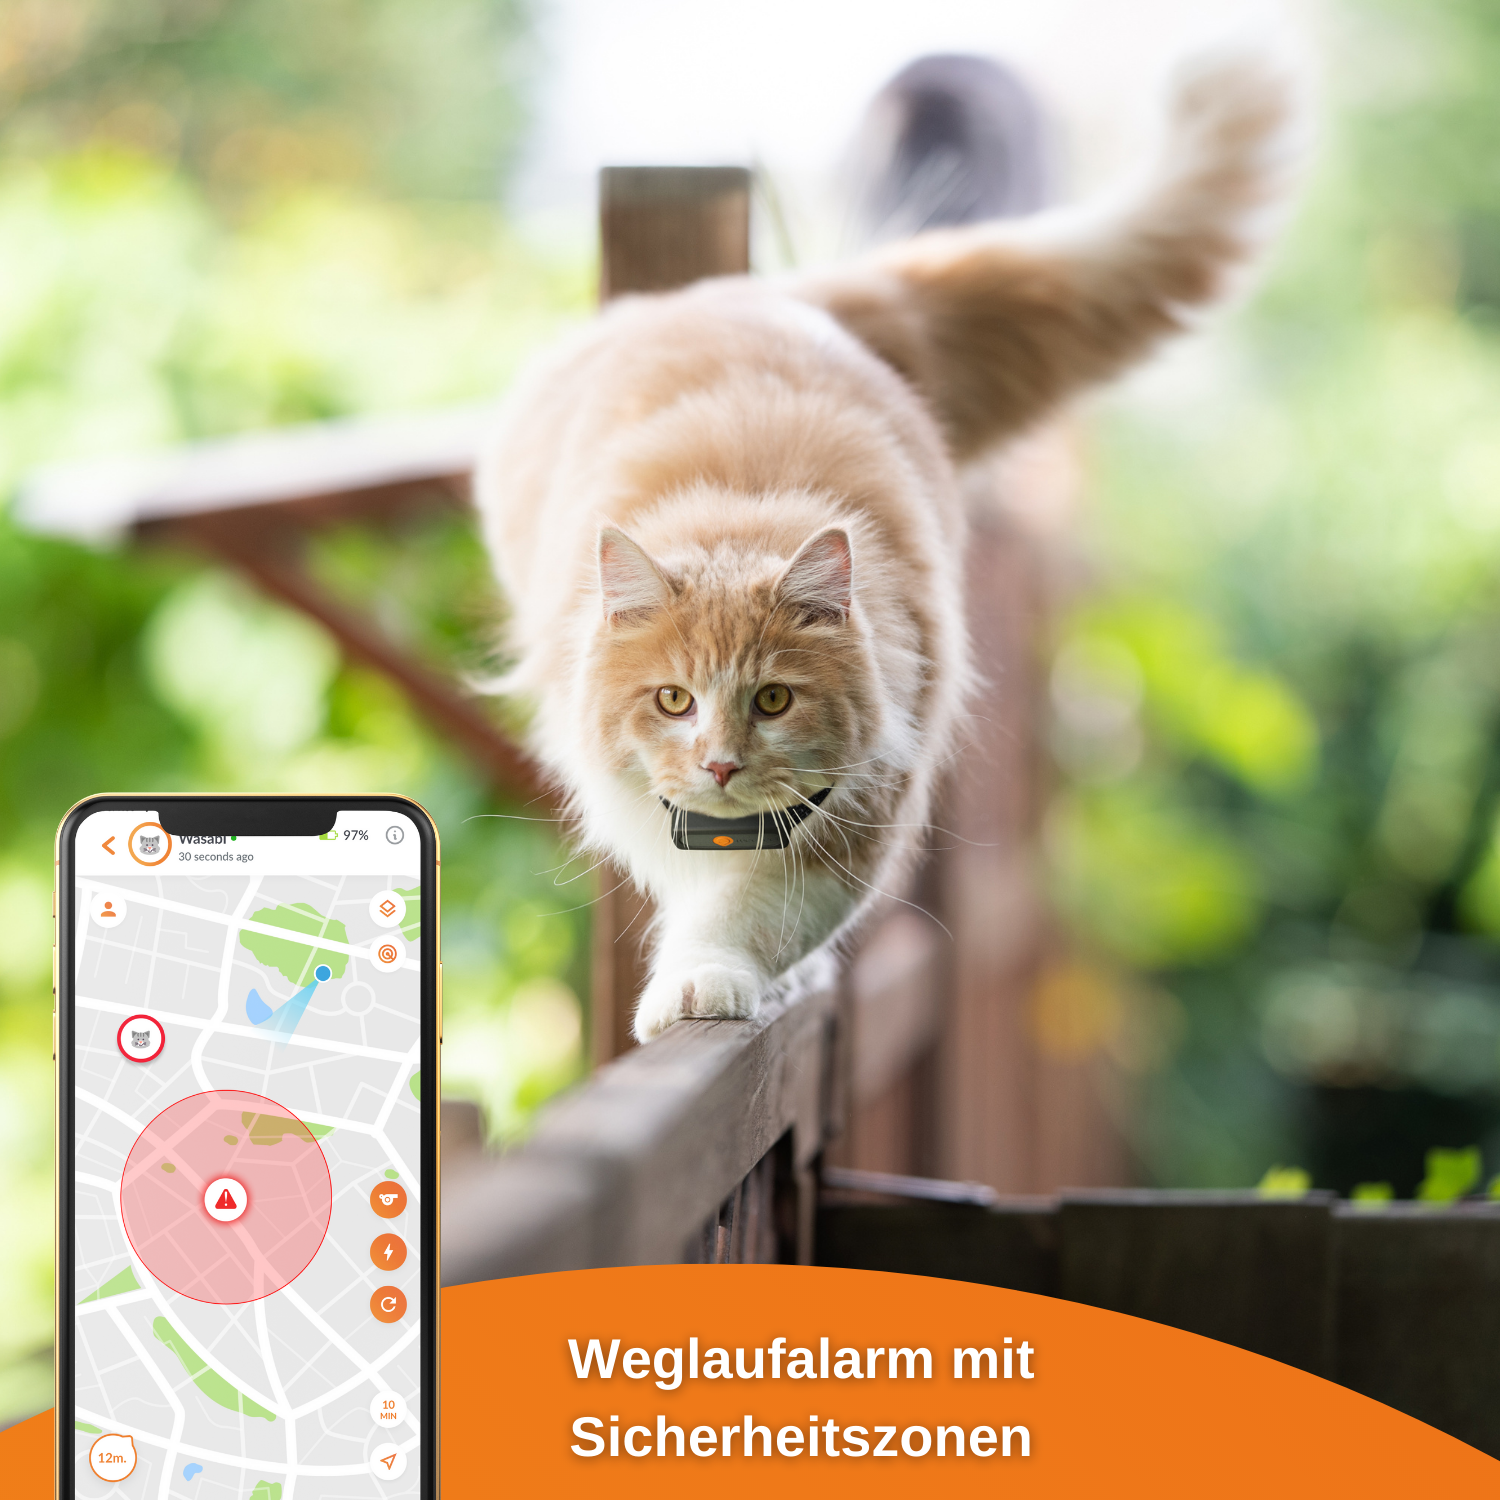 WEENECT Cat GPS Tracker für XS Katze